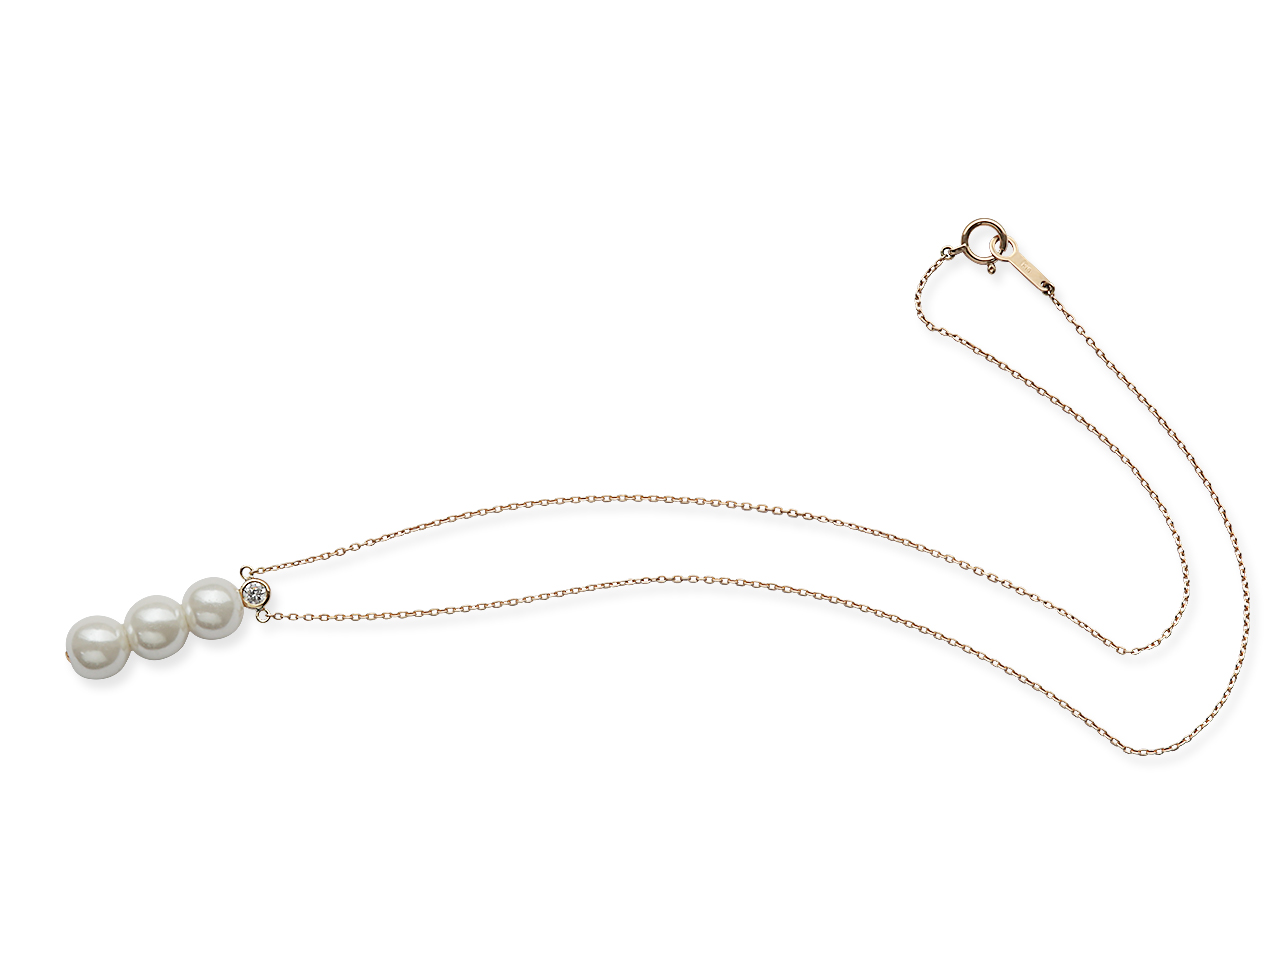 パールネックレスの真珠3つを利用しダイヤ付きネックレスに